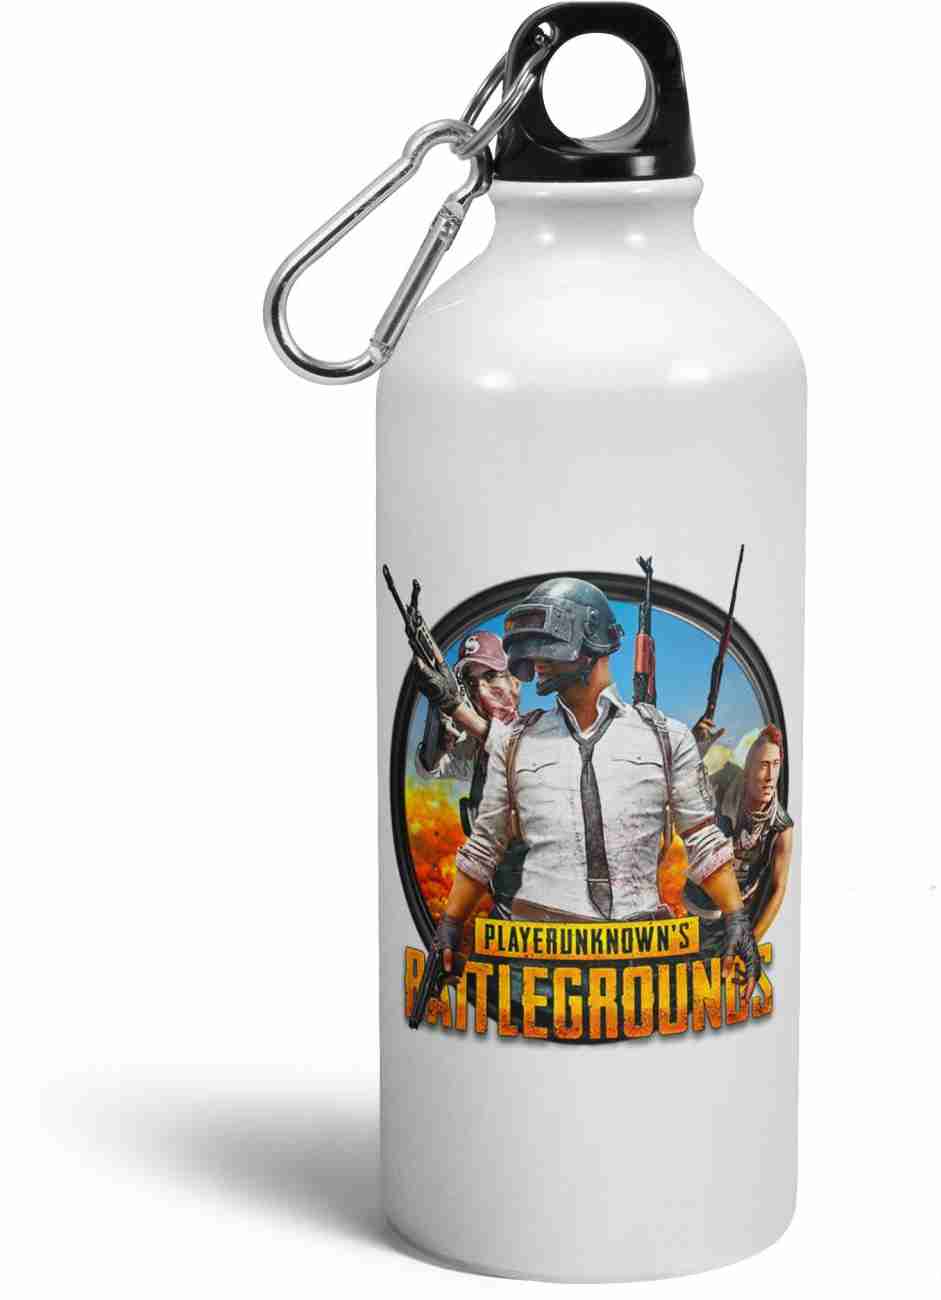 Buy Tee Mafia PubG: Battlegrounds Combo Water Bottle Mug and Mouse